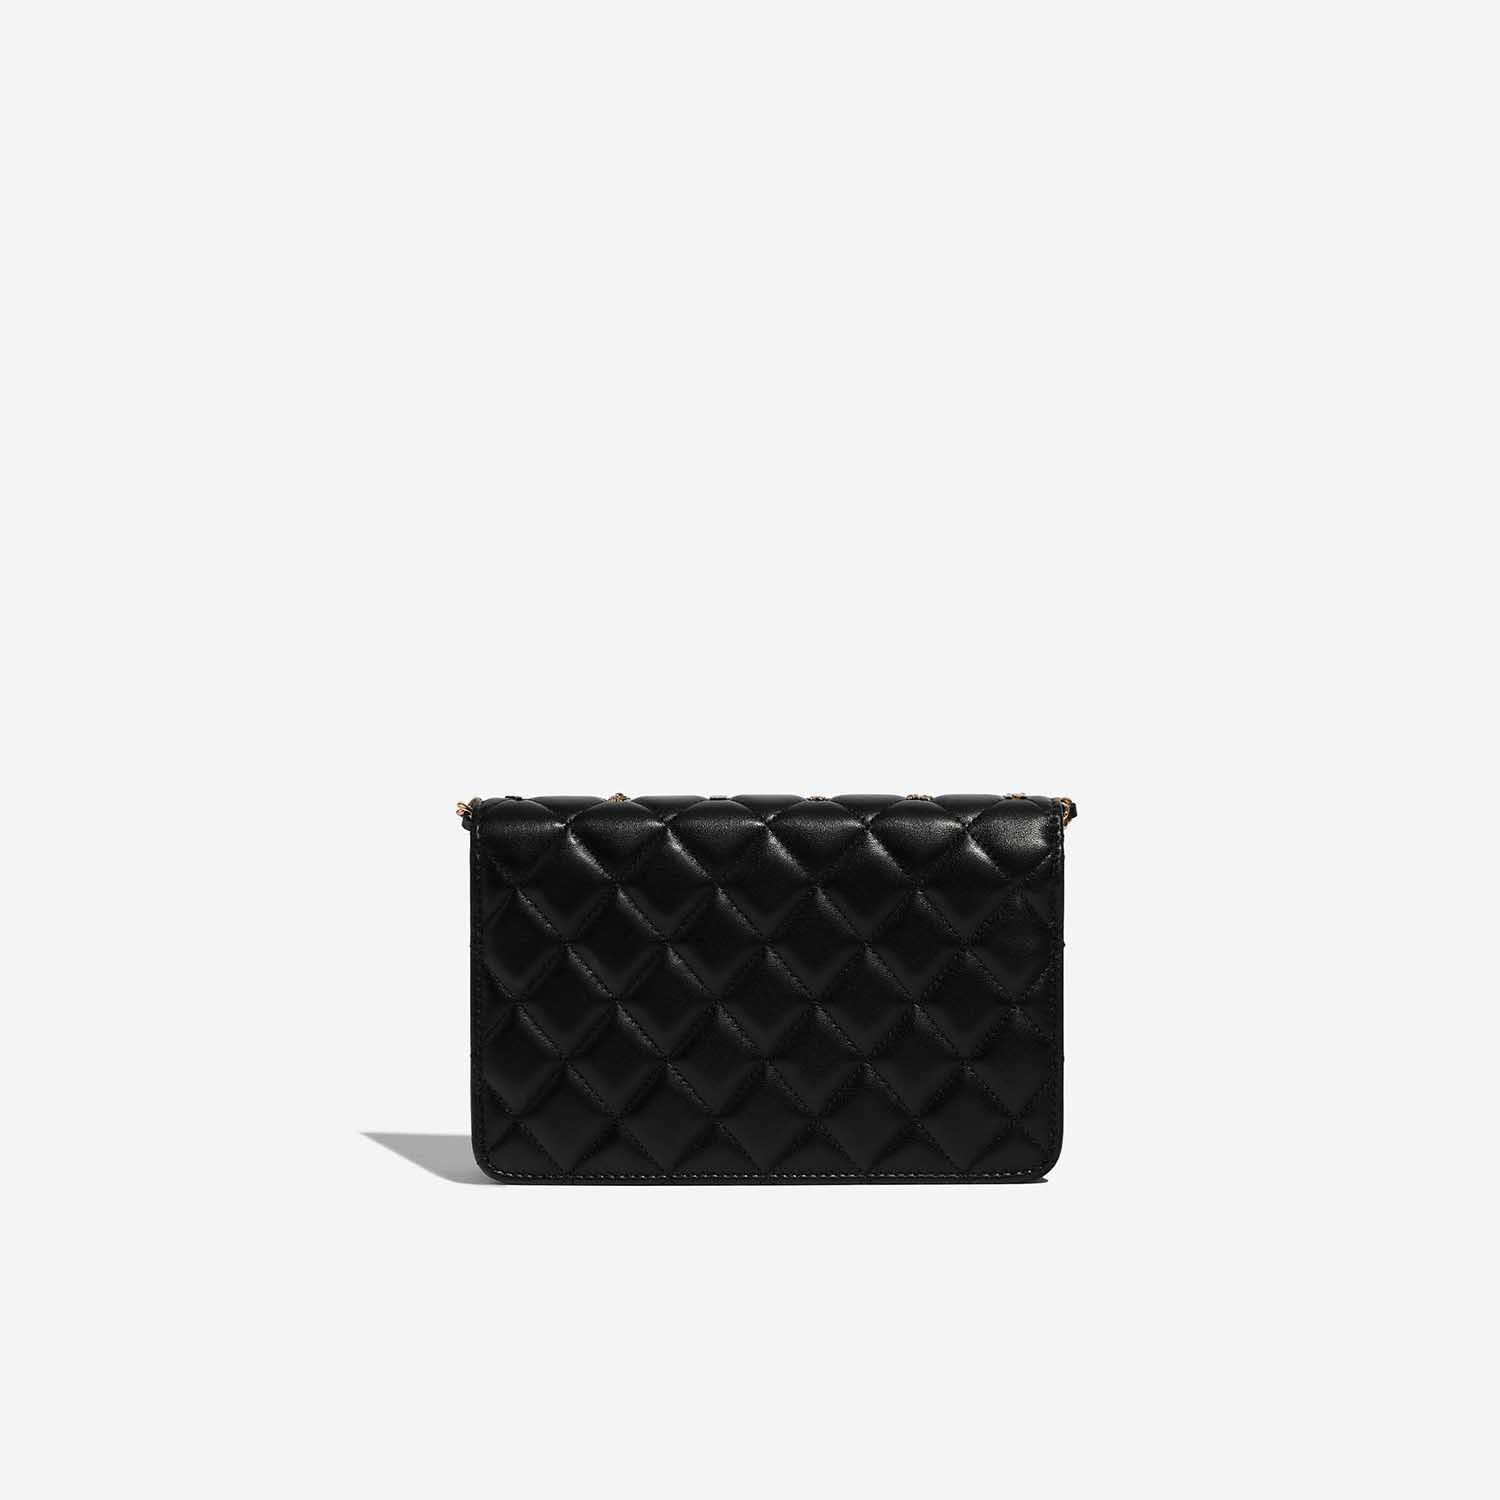 Sac Chanel d'occasion Timeless WOC Agneau Noir Lucky Charms Noir Dos | Vendez votre sac de créateur sur Saclab.com